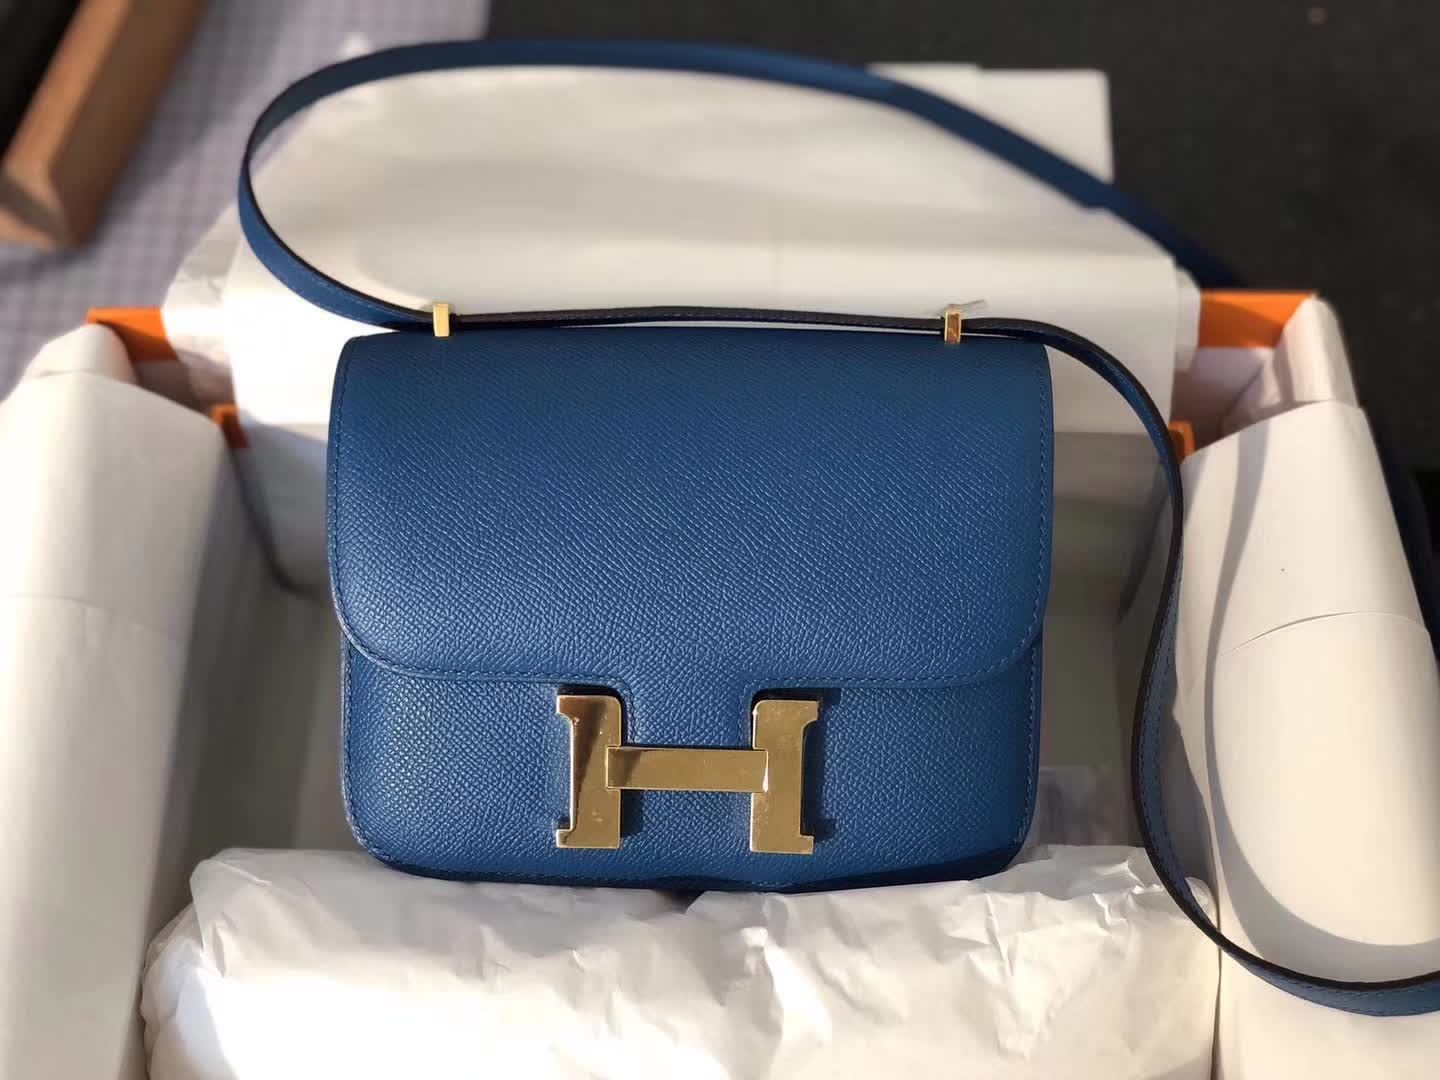 Hermes Stewardess Bags